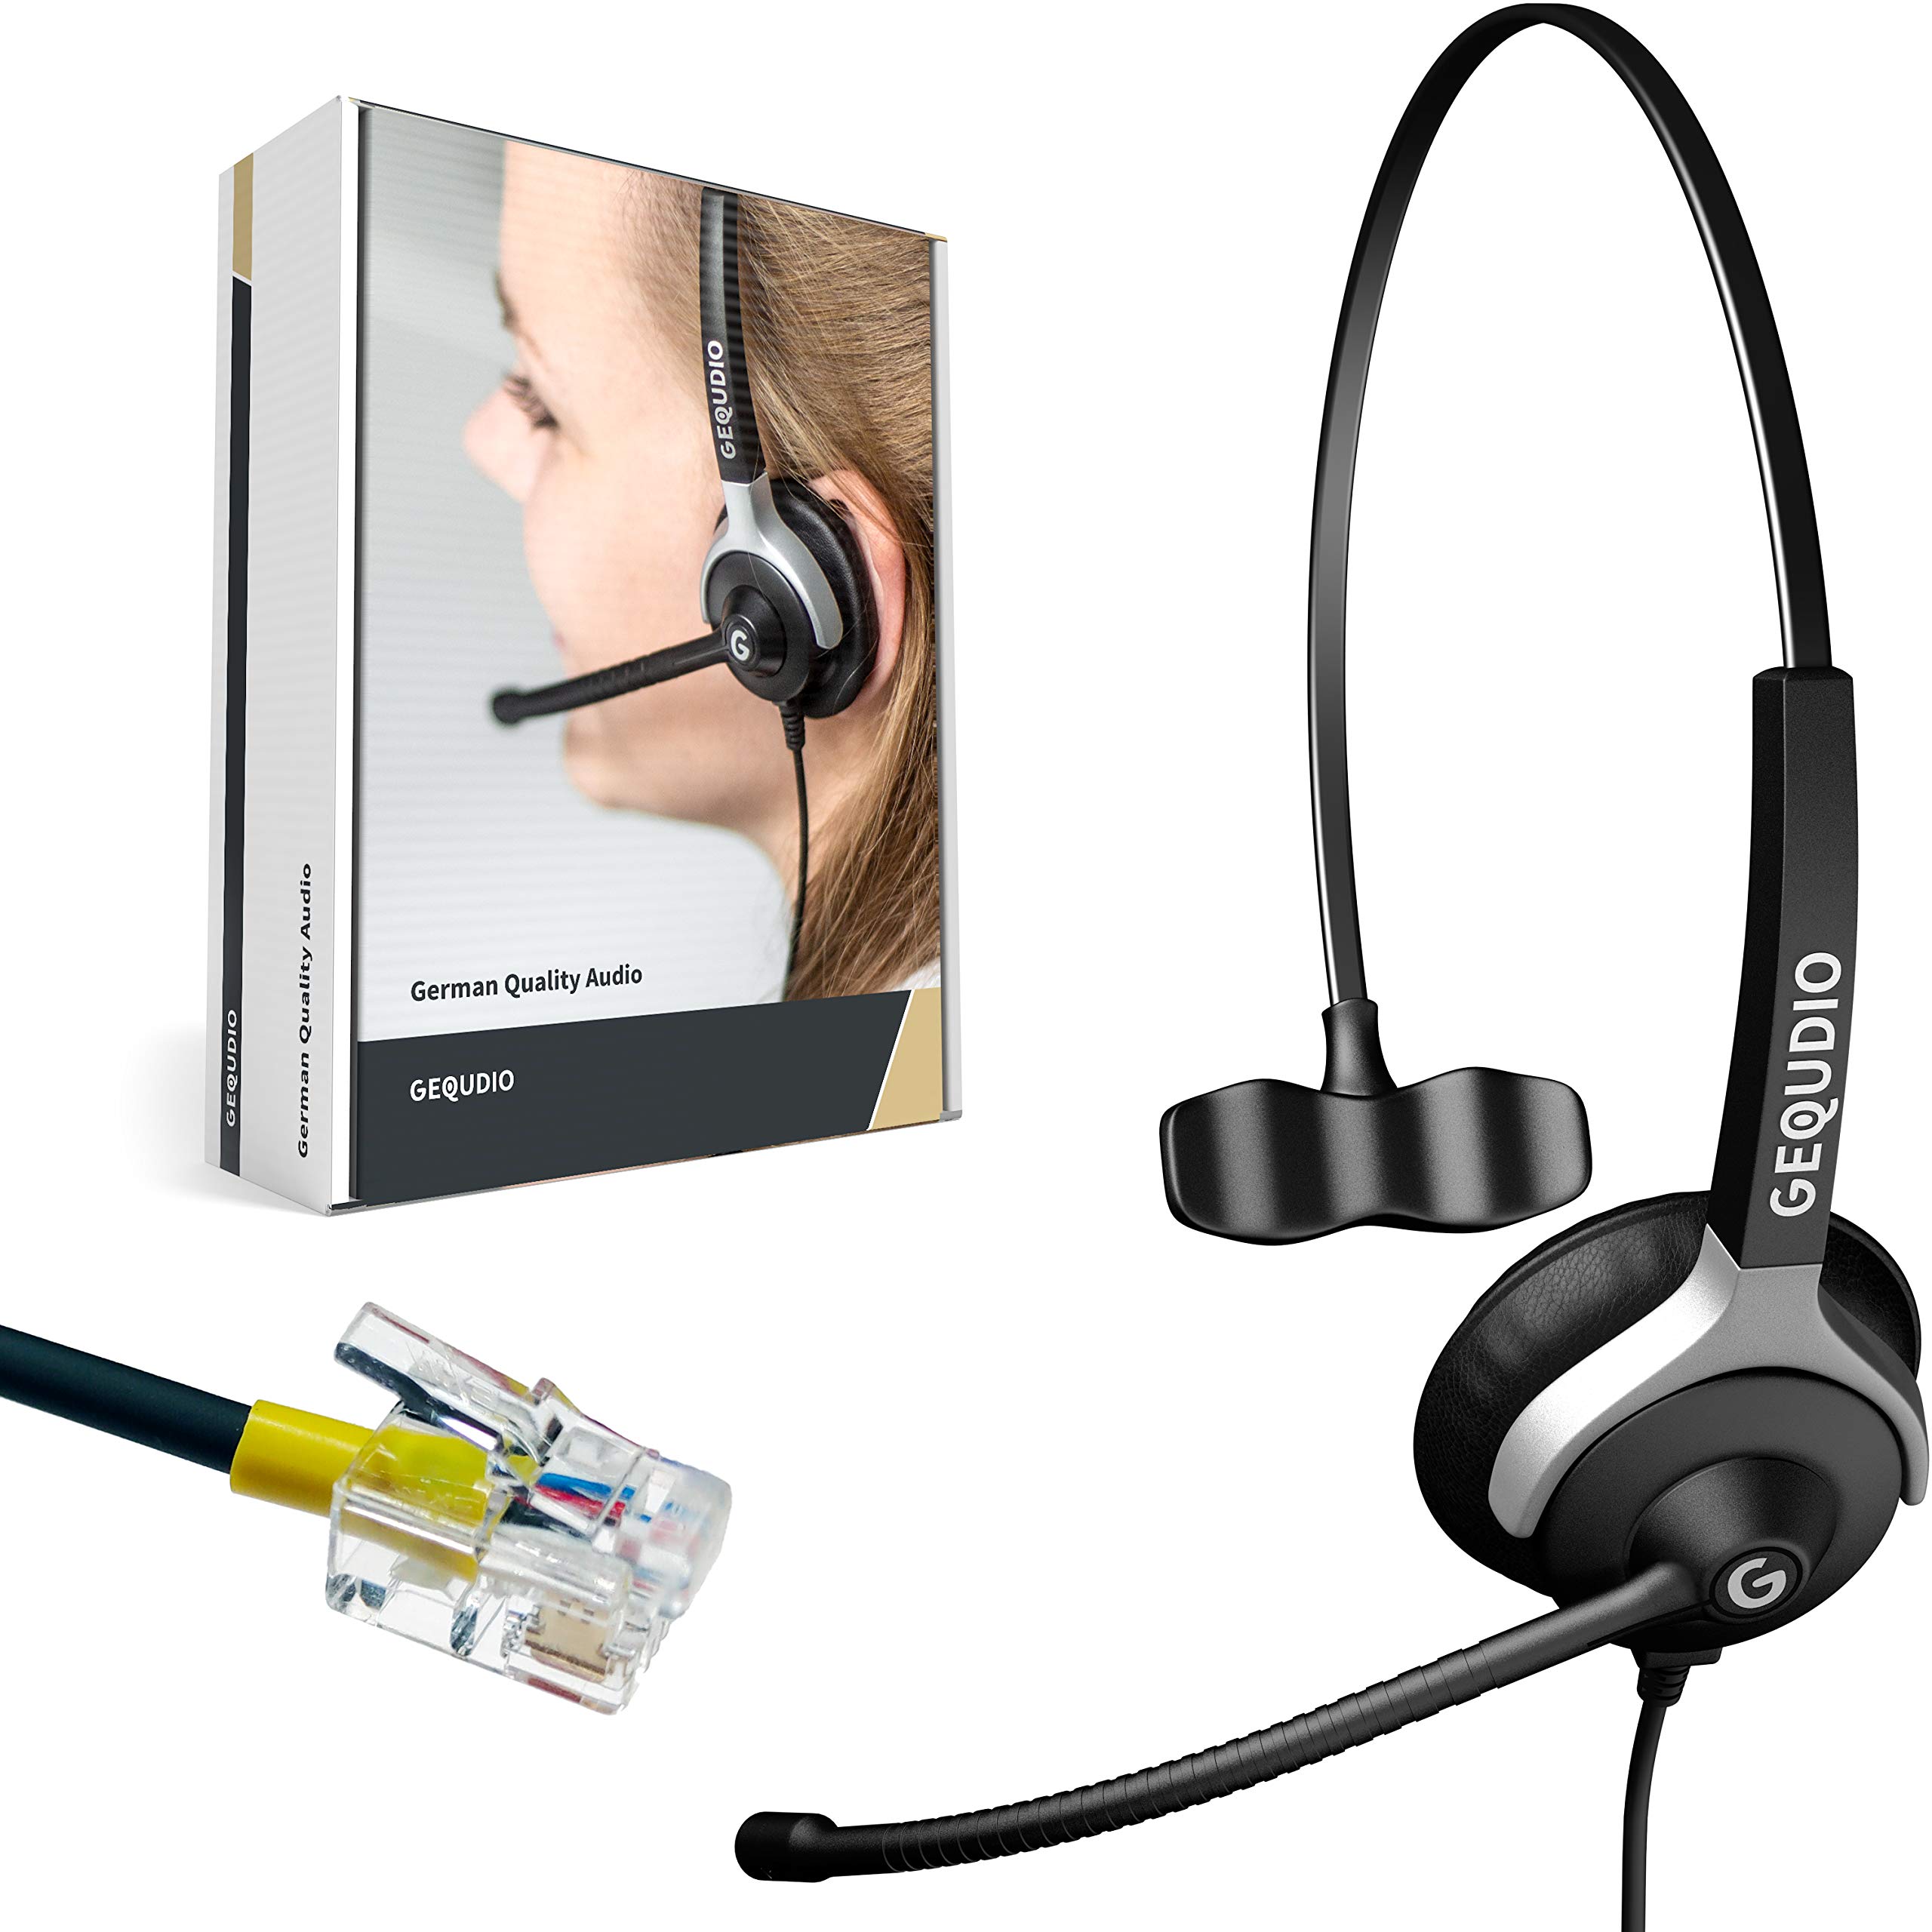 GEQUDIO Headset für GX3+ GX5+ und kompatibel mit Mitel, Aastra, Poly/Polycom und Gigaset-RJ Telefon - inklusive RJ Kabel - Kopfhörer & Mikrofon mit Ersatz Polster - leicht 60g (1-Ohr)